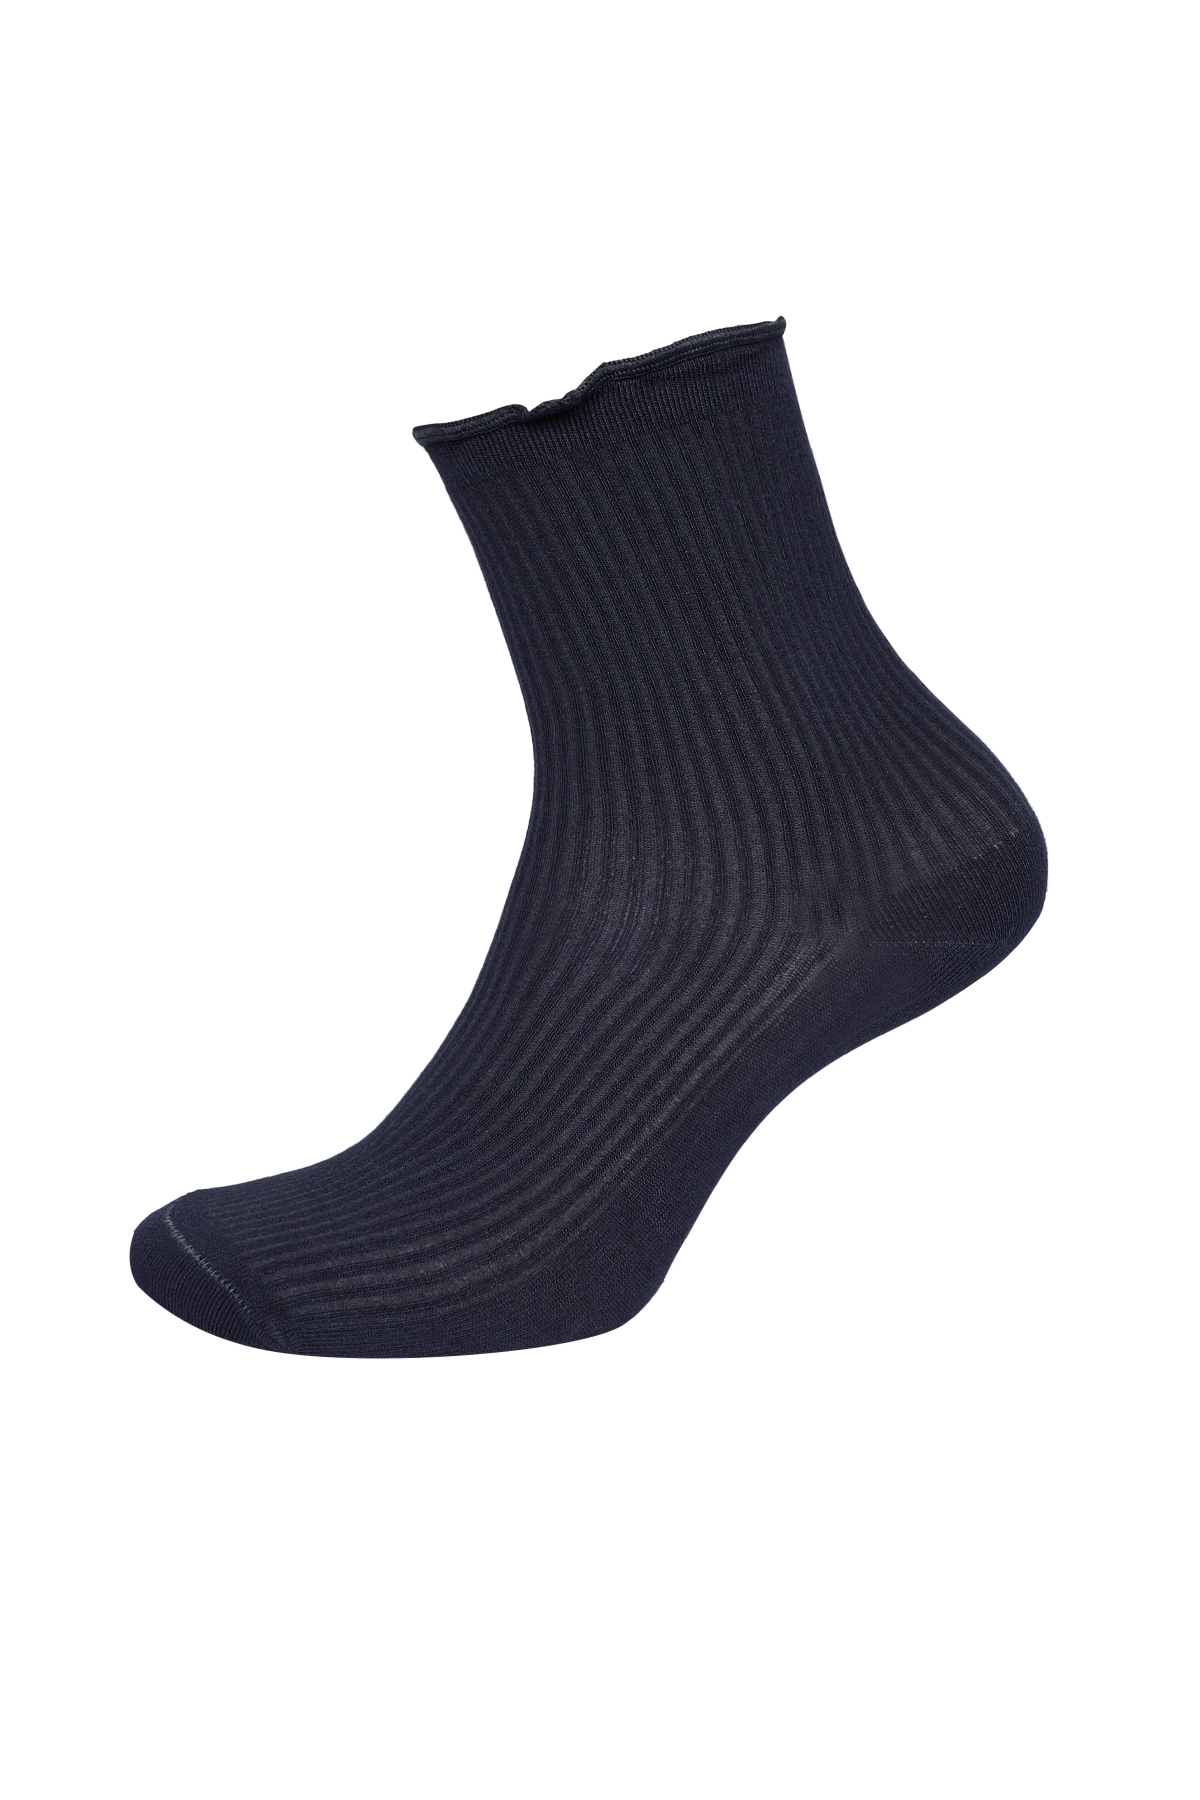 Kadın Bileği Fırfırlı Pamuk Soket Çorap